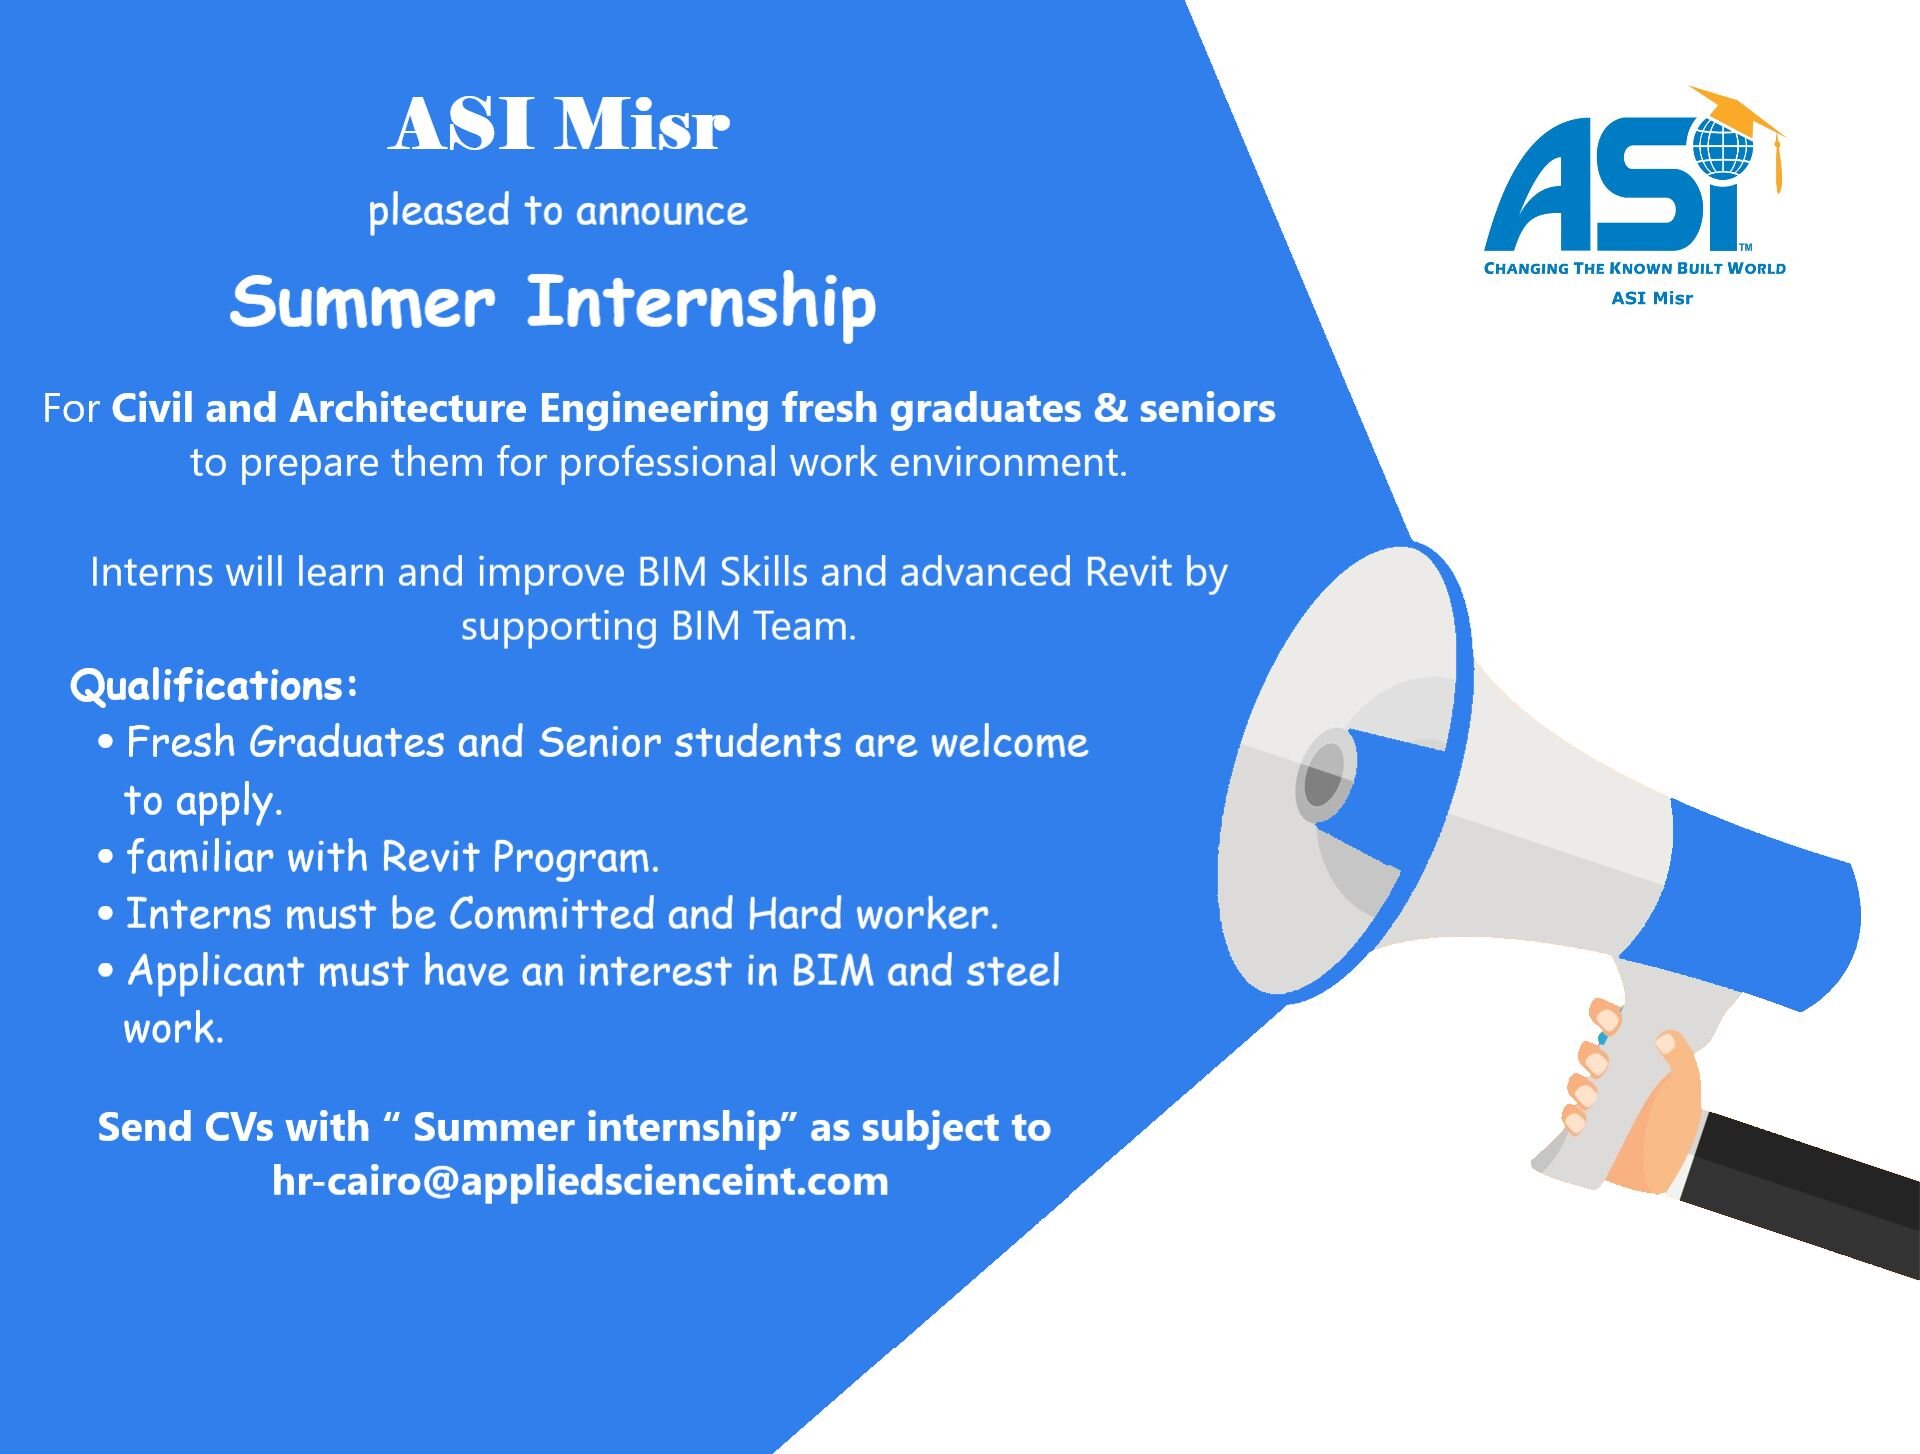 التدريب الصيفي لطلاب كلية هندسة فى شركة ASI Misr لعام 2022